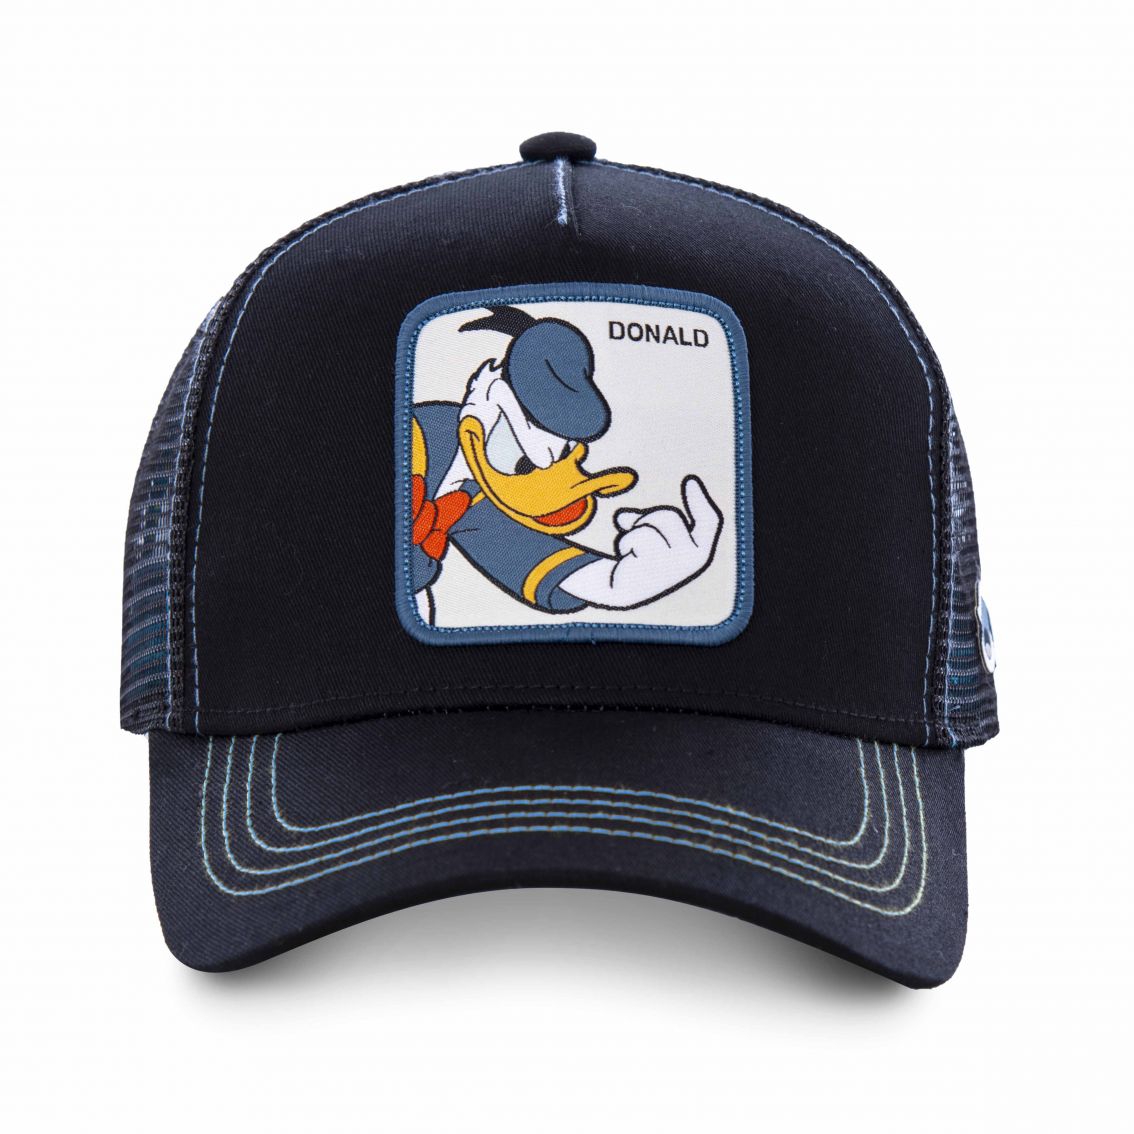 Disney Donald Duck Trucker - Navy